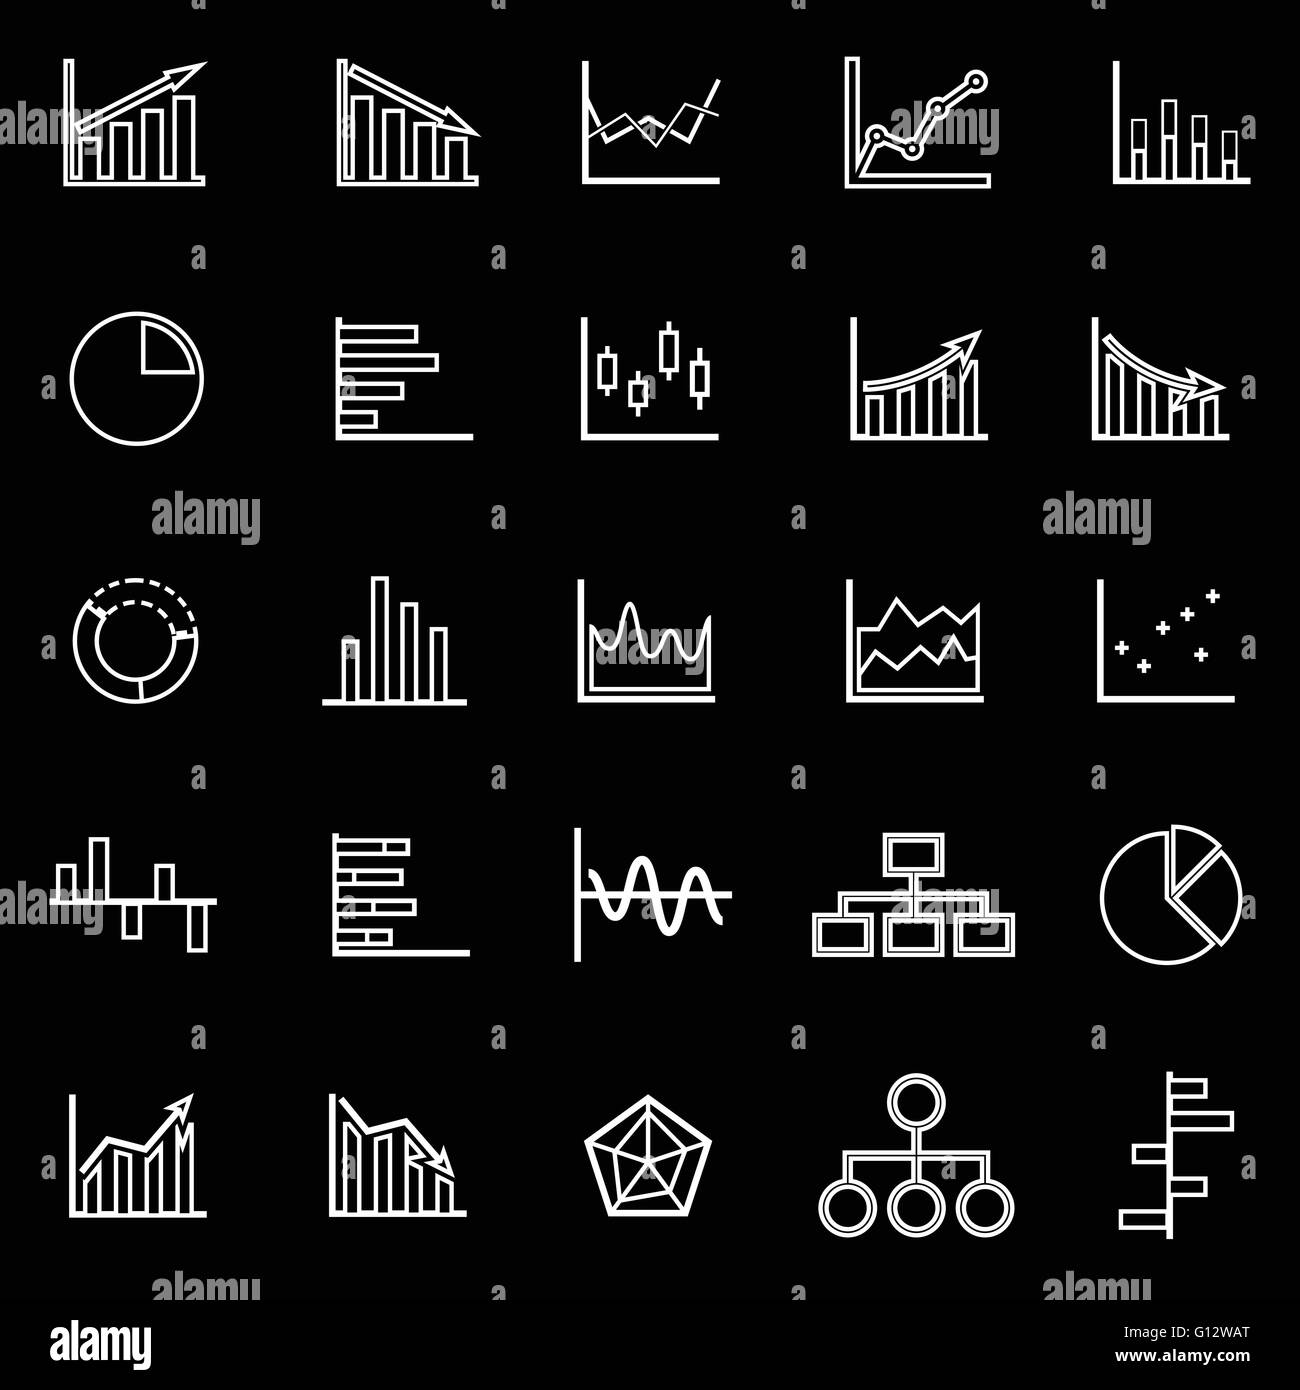 La linea del grafico le icone su sfondo nero, vettore di stock Illustrazione Vettoriale